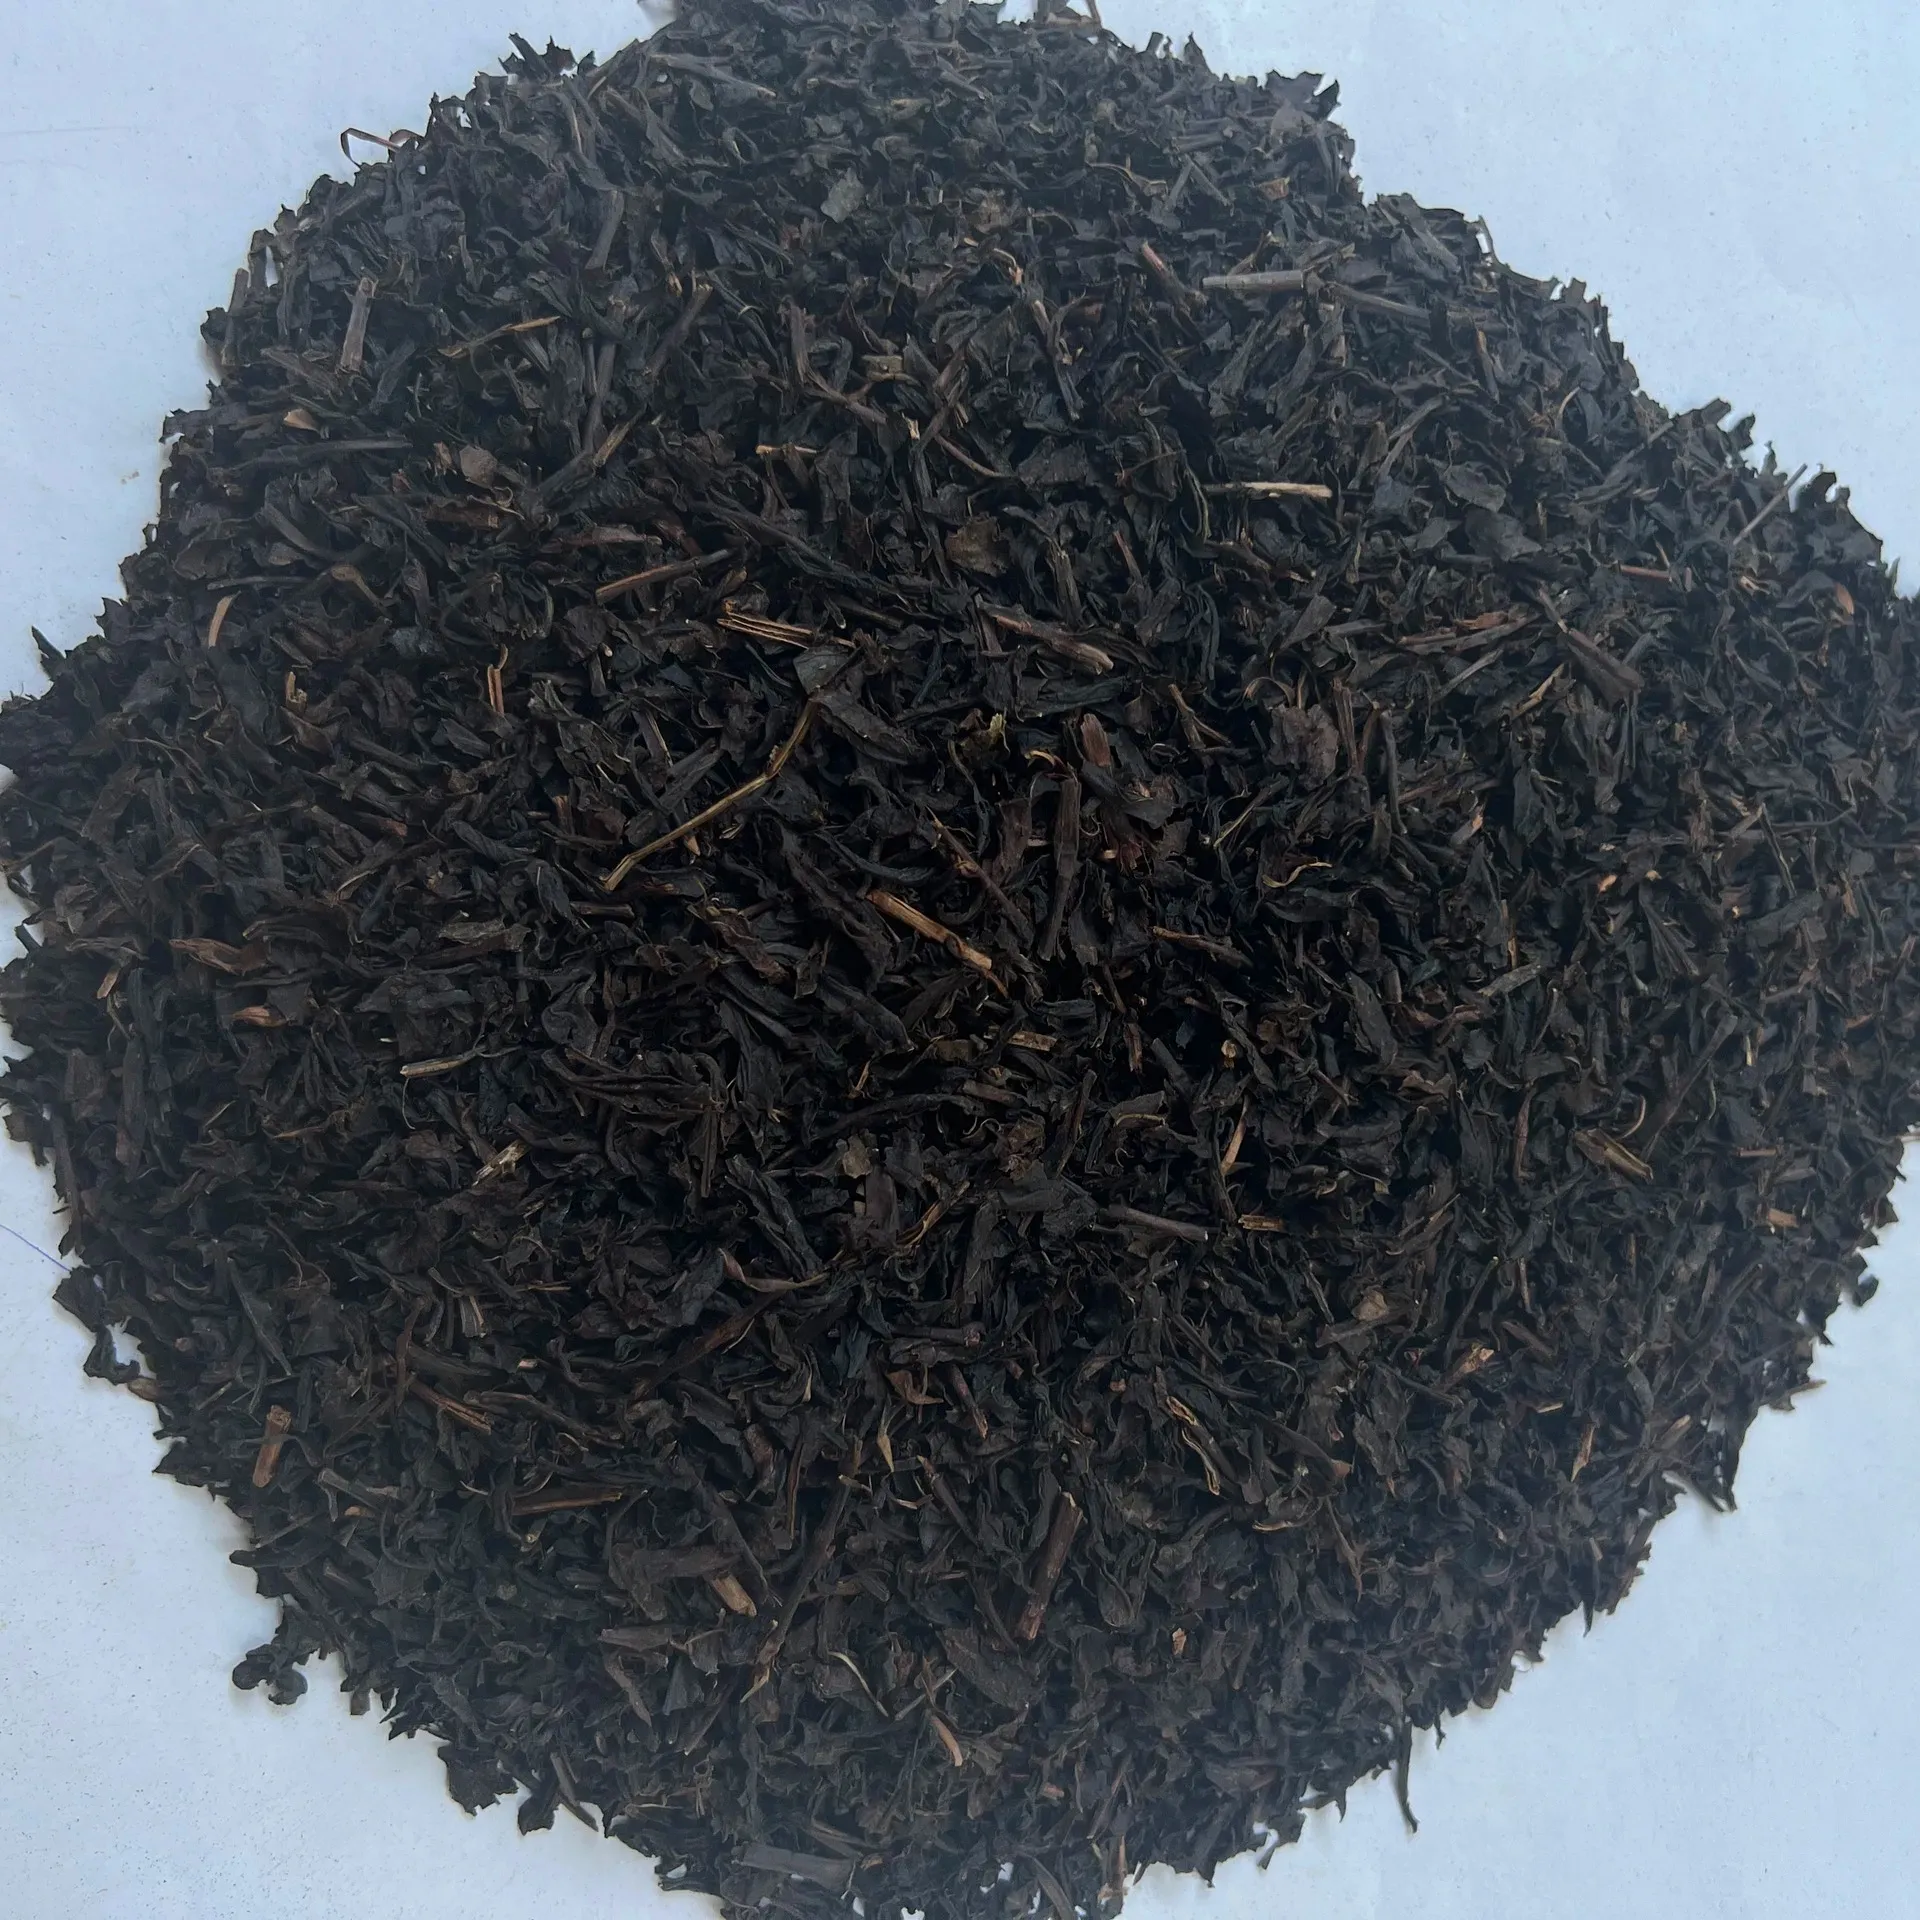 תה שחור וייטנאם OPA עלה בינוני סיטונאי יבול חדש באיכות טובה ישירות מהמפעל במחוז פו ת'ו